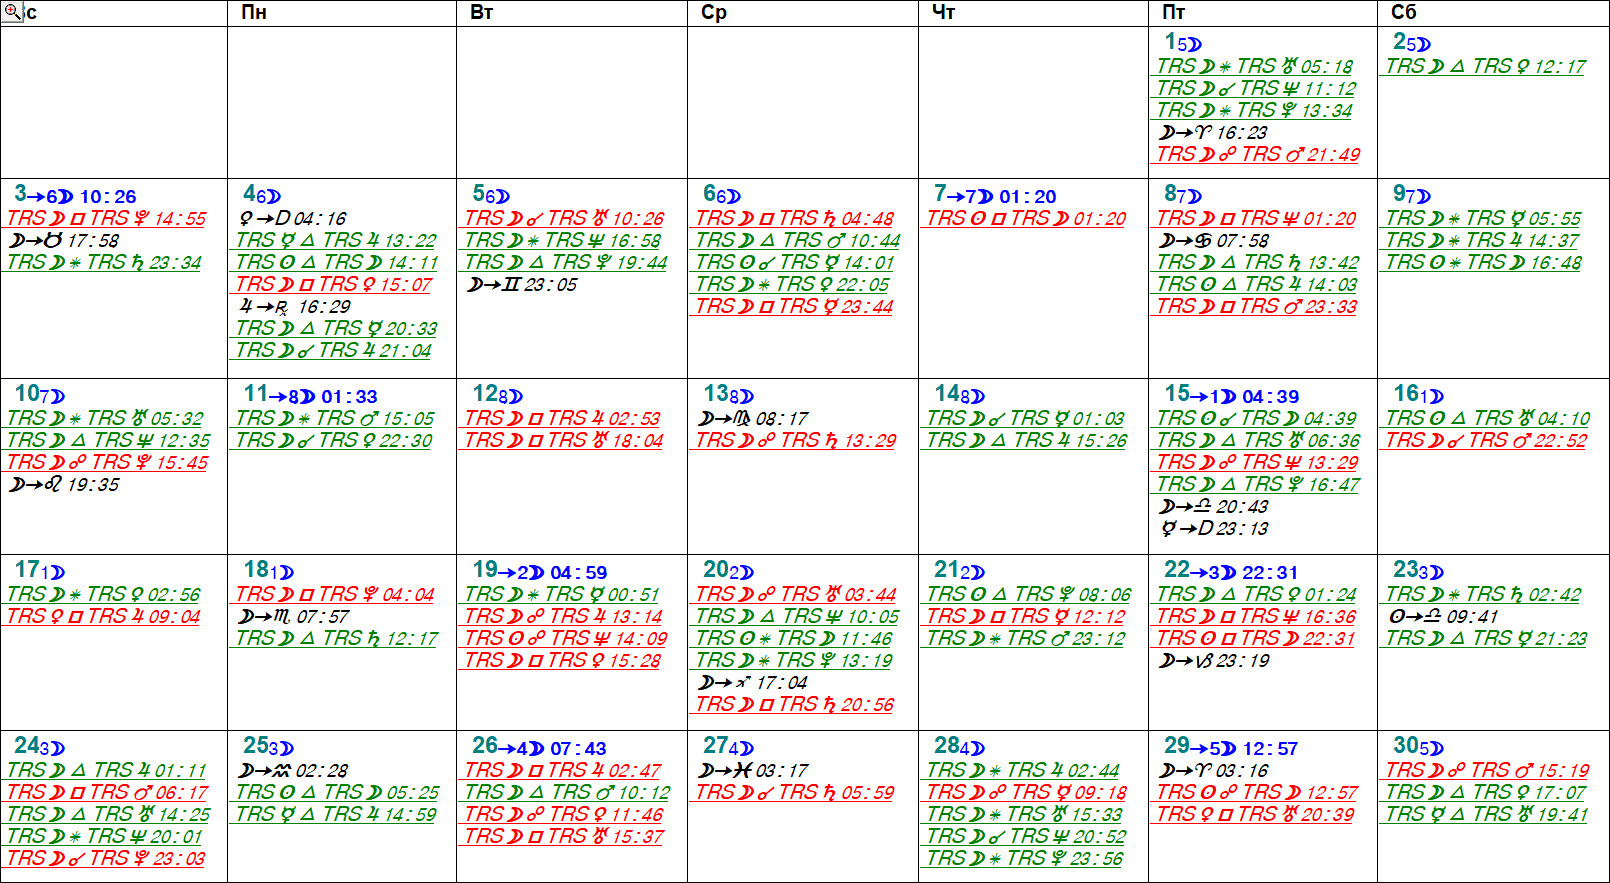 астрологічний календар